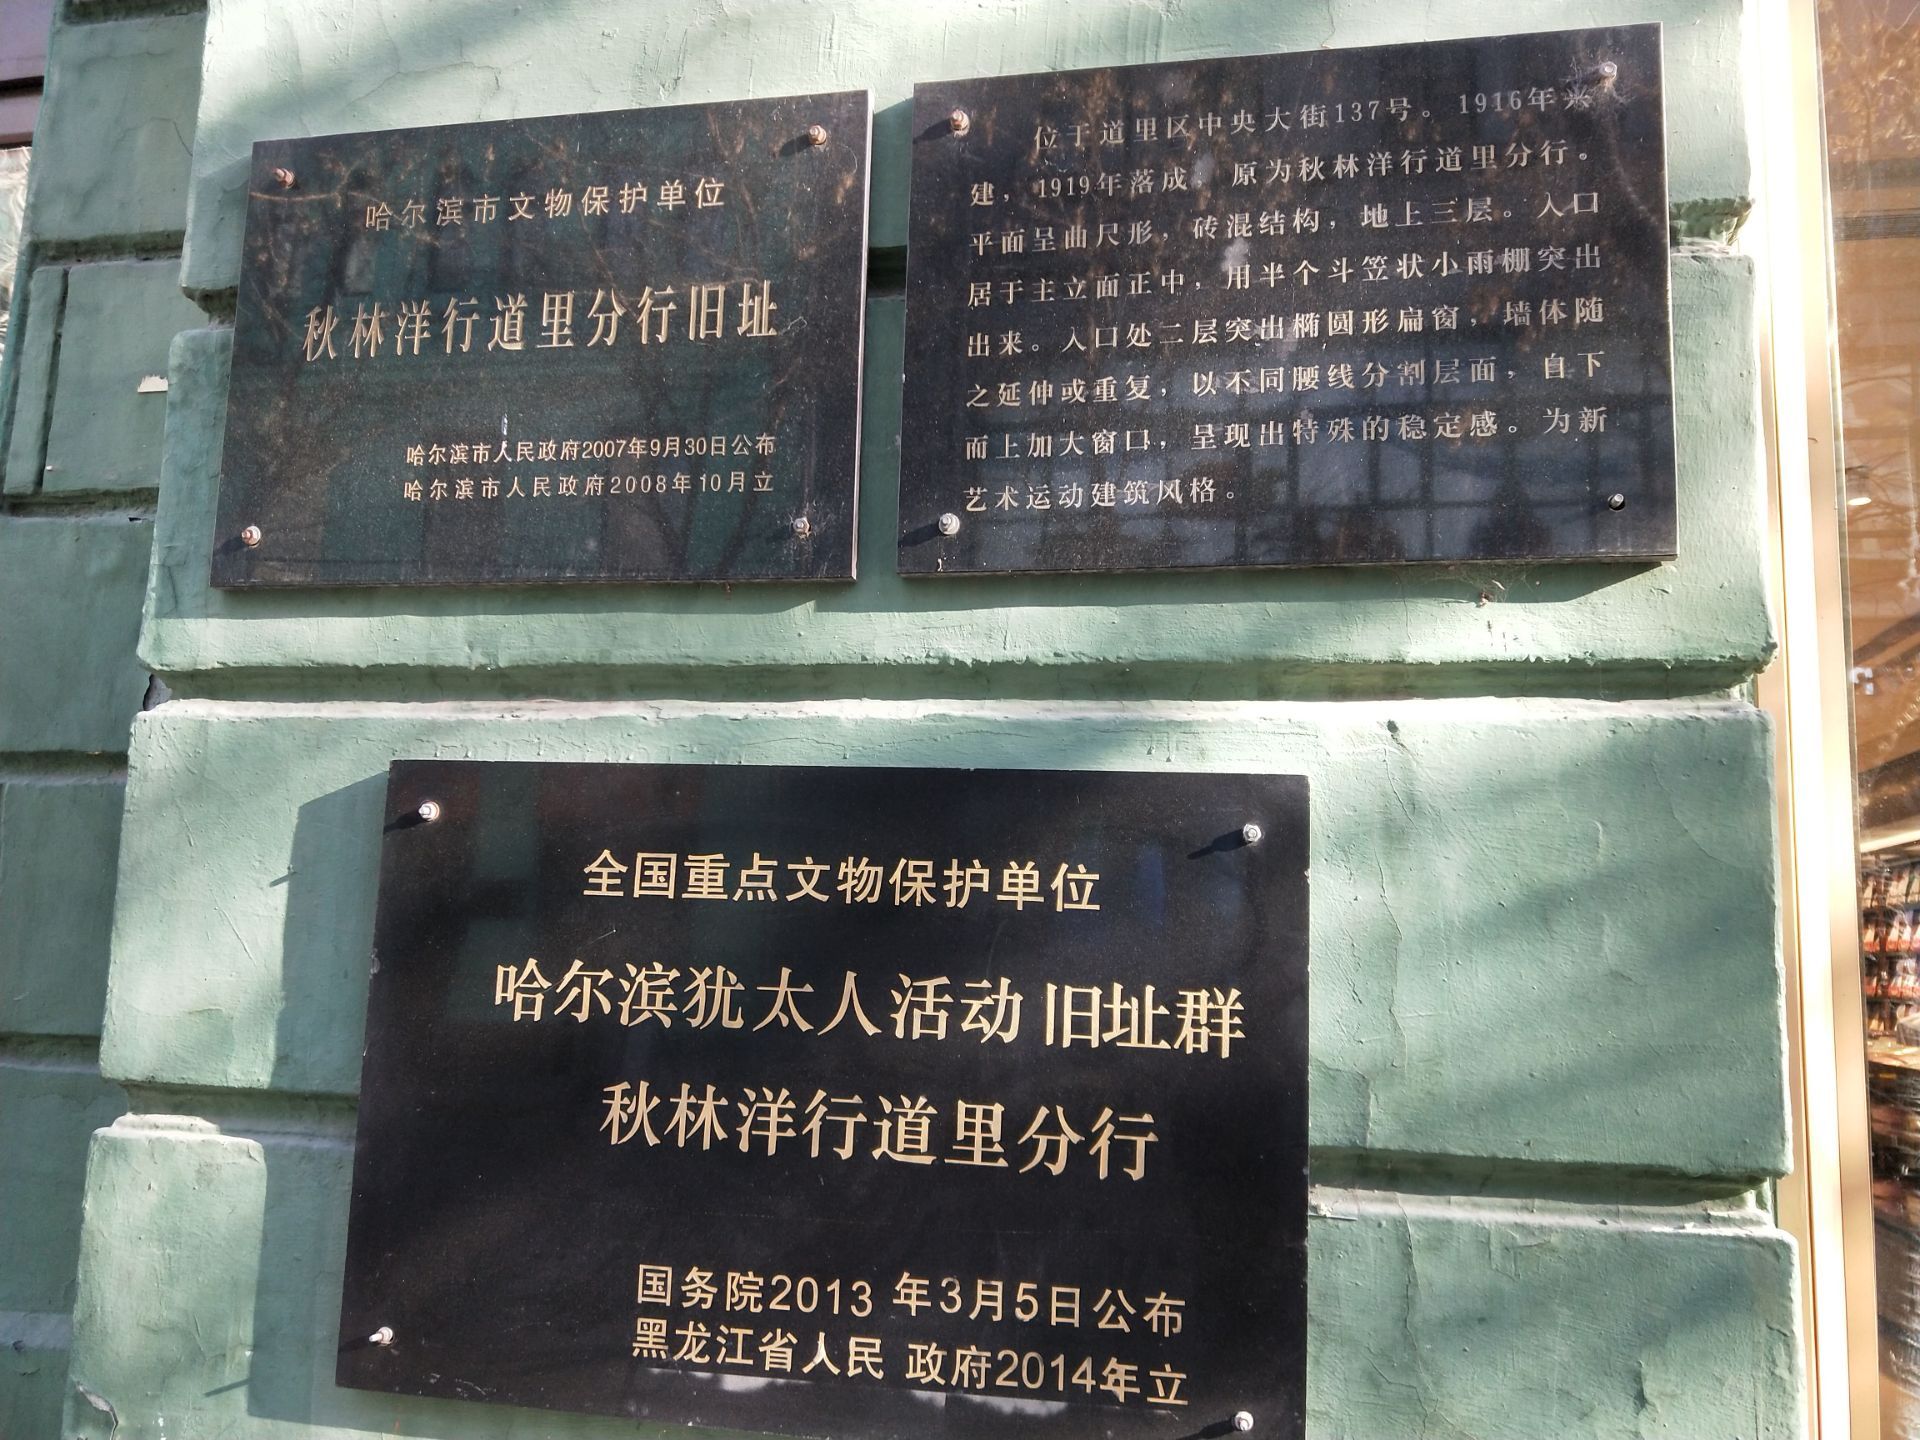 【携程攻略】哈尔滨731部队罪证遗址景点,血淋淋的历史陈列 看完让人心情沉重 不是很出名的旅游景点 但是应该…